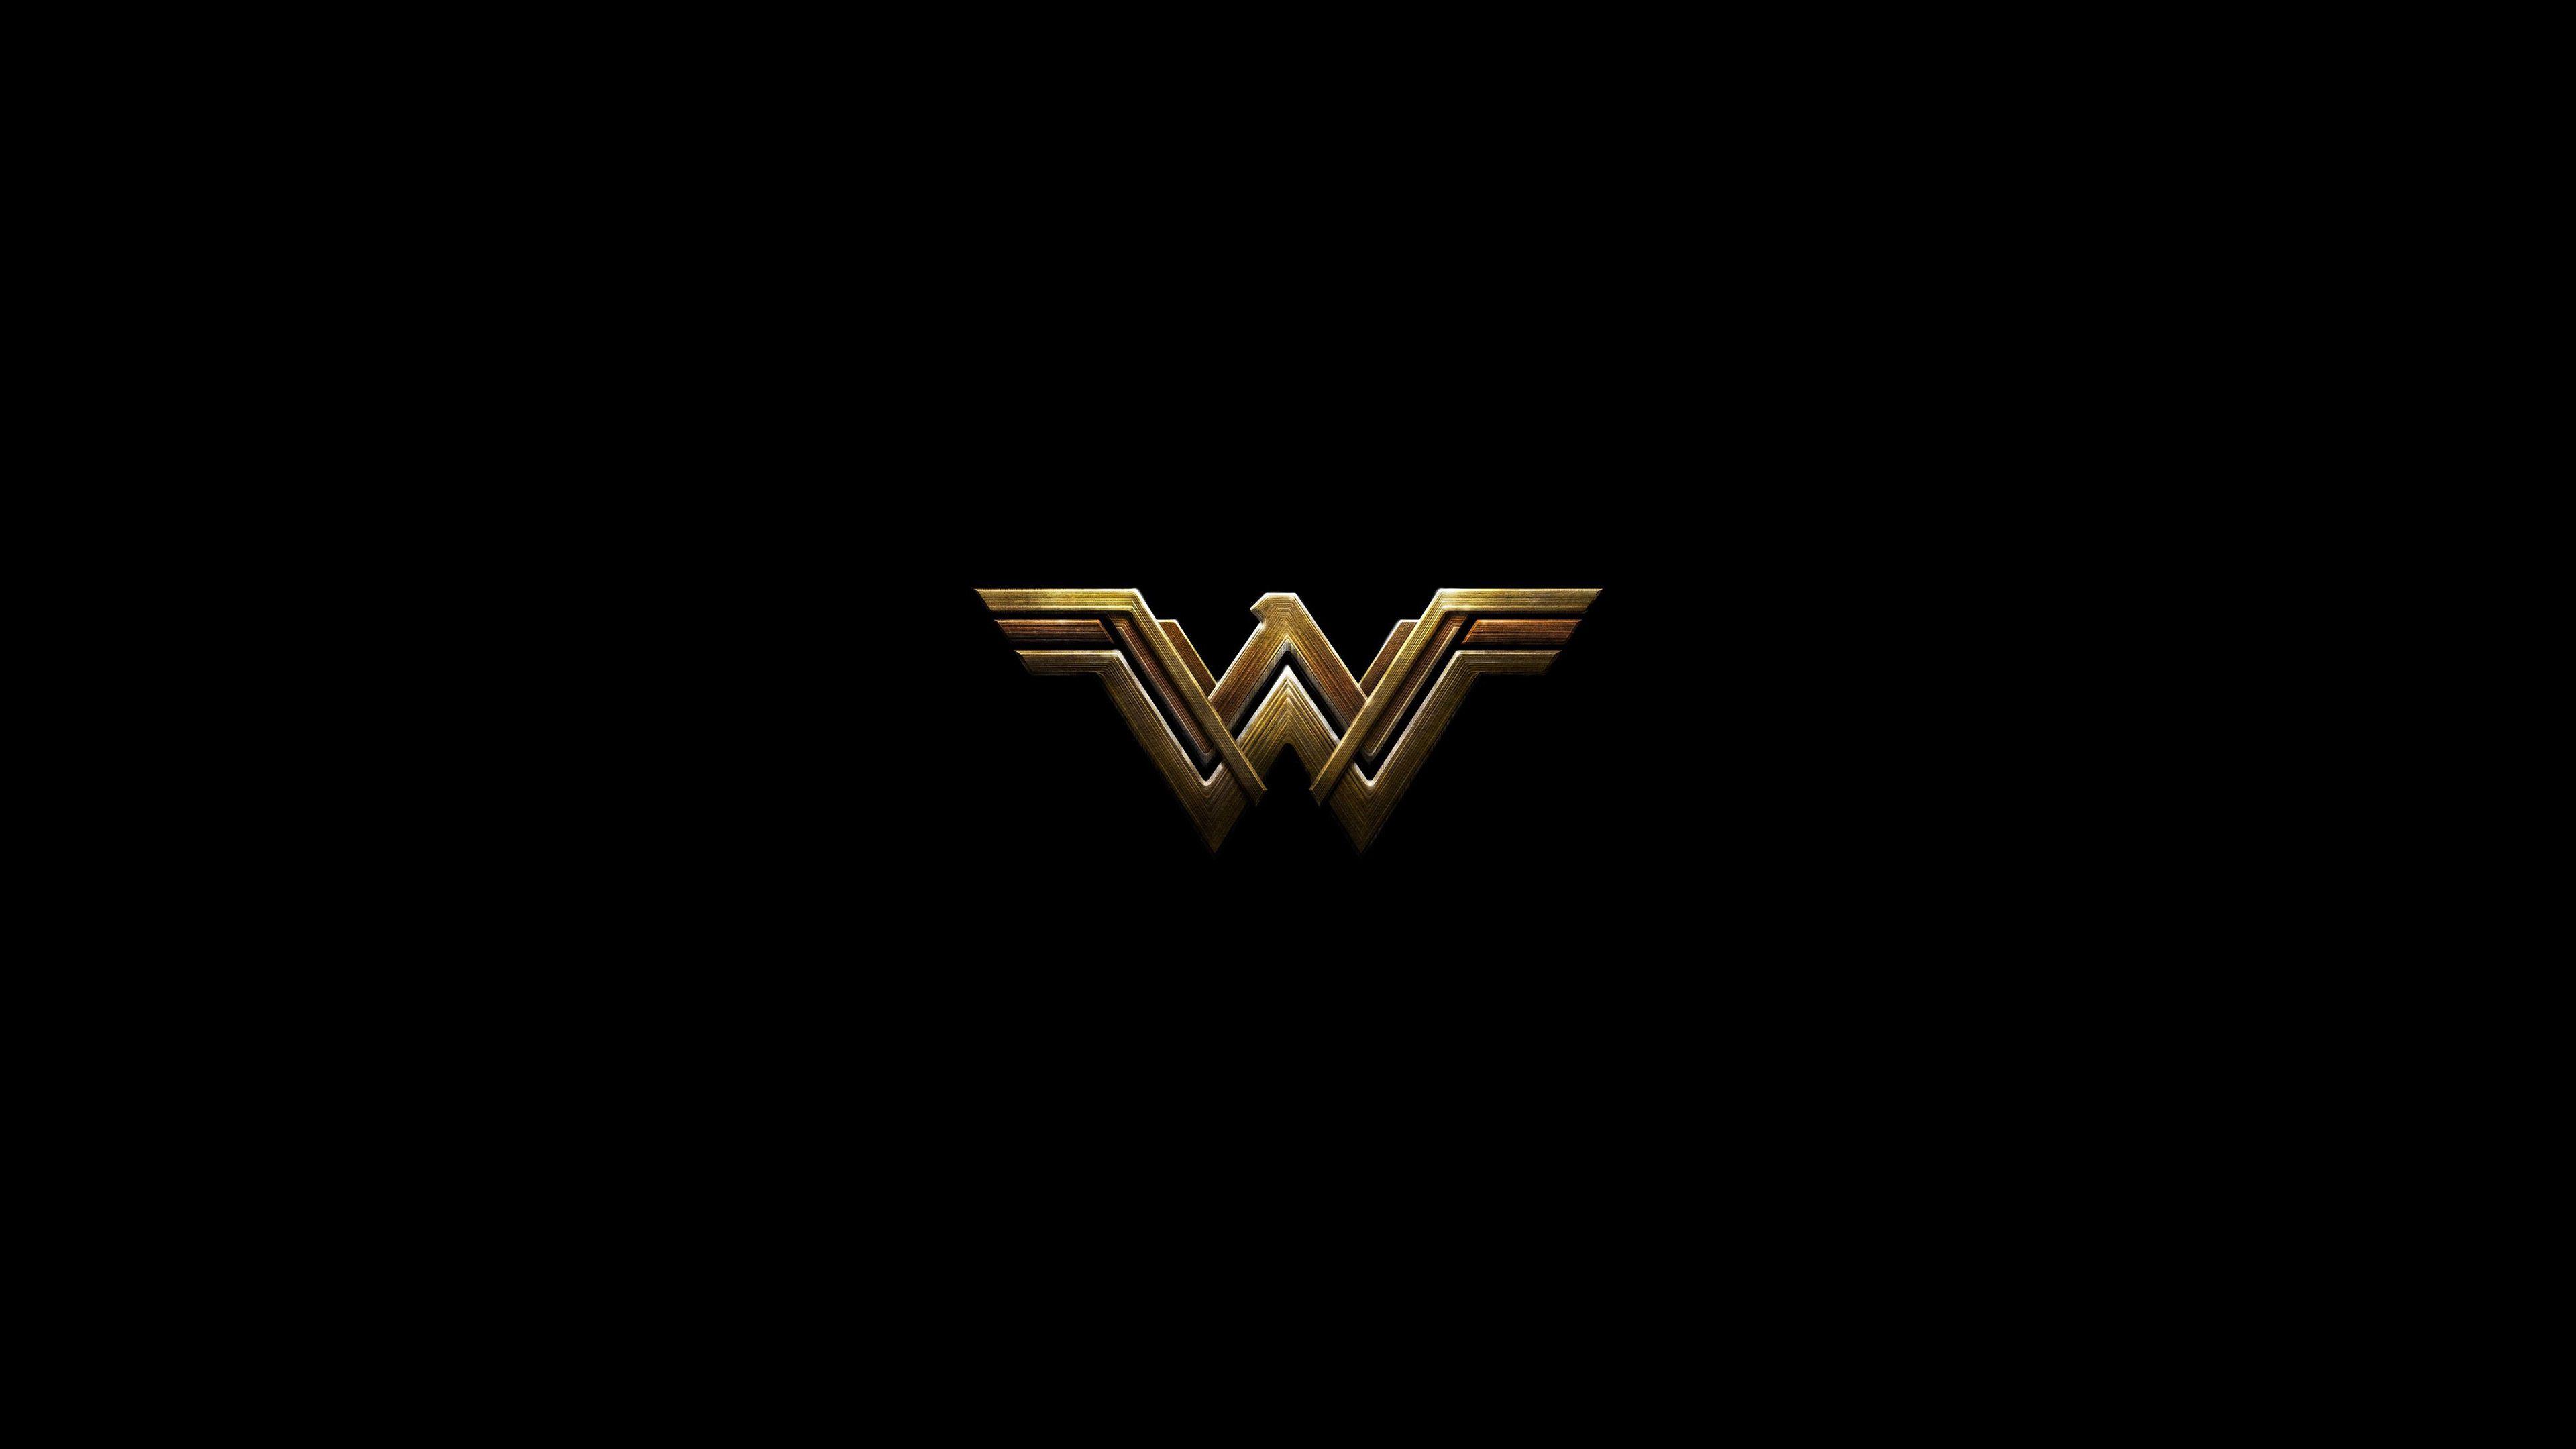 Wonder Woman Dark Logo 4k, HD Superheroes, 4k Wallpapers, Image